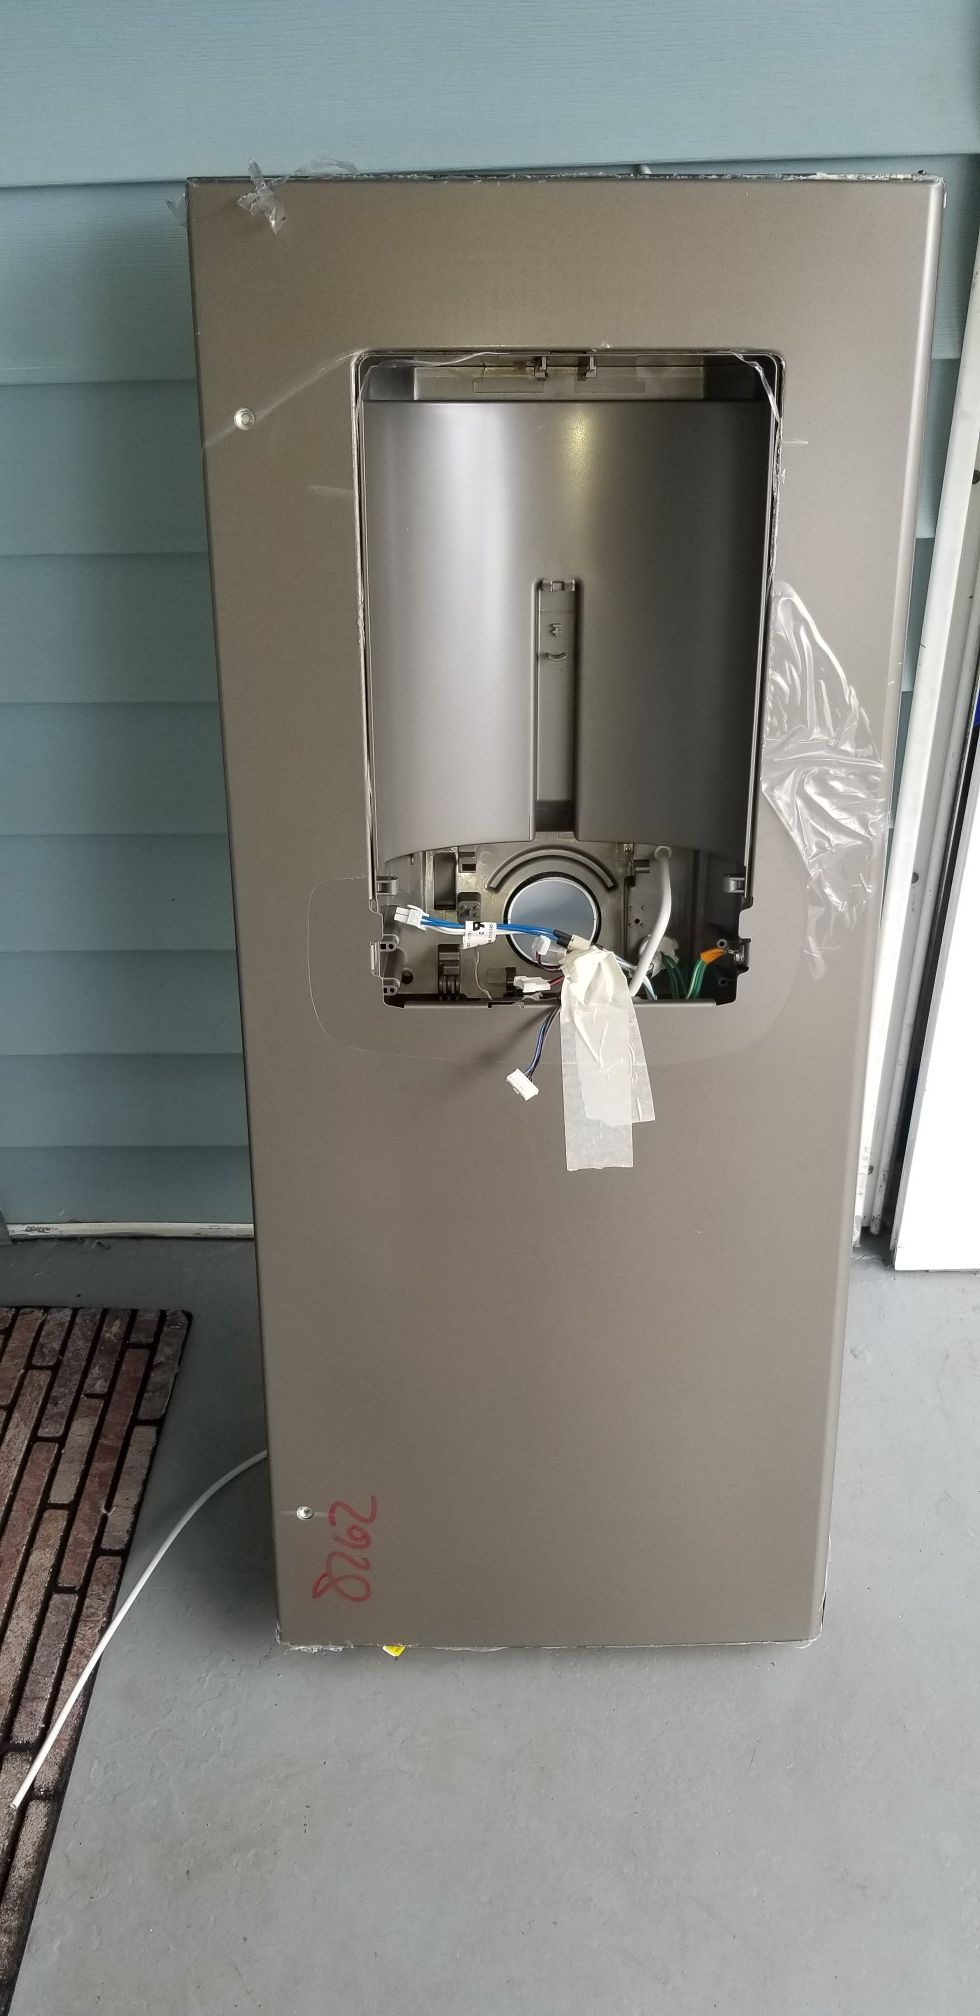 Brand new replacement ice maker door for GE refrigerators model